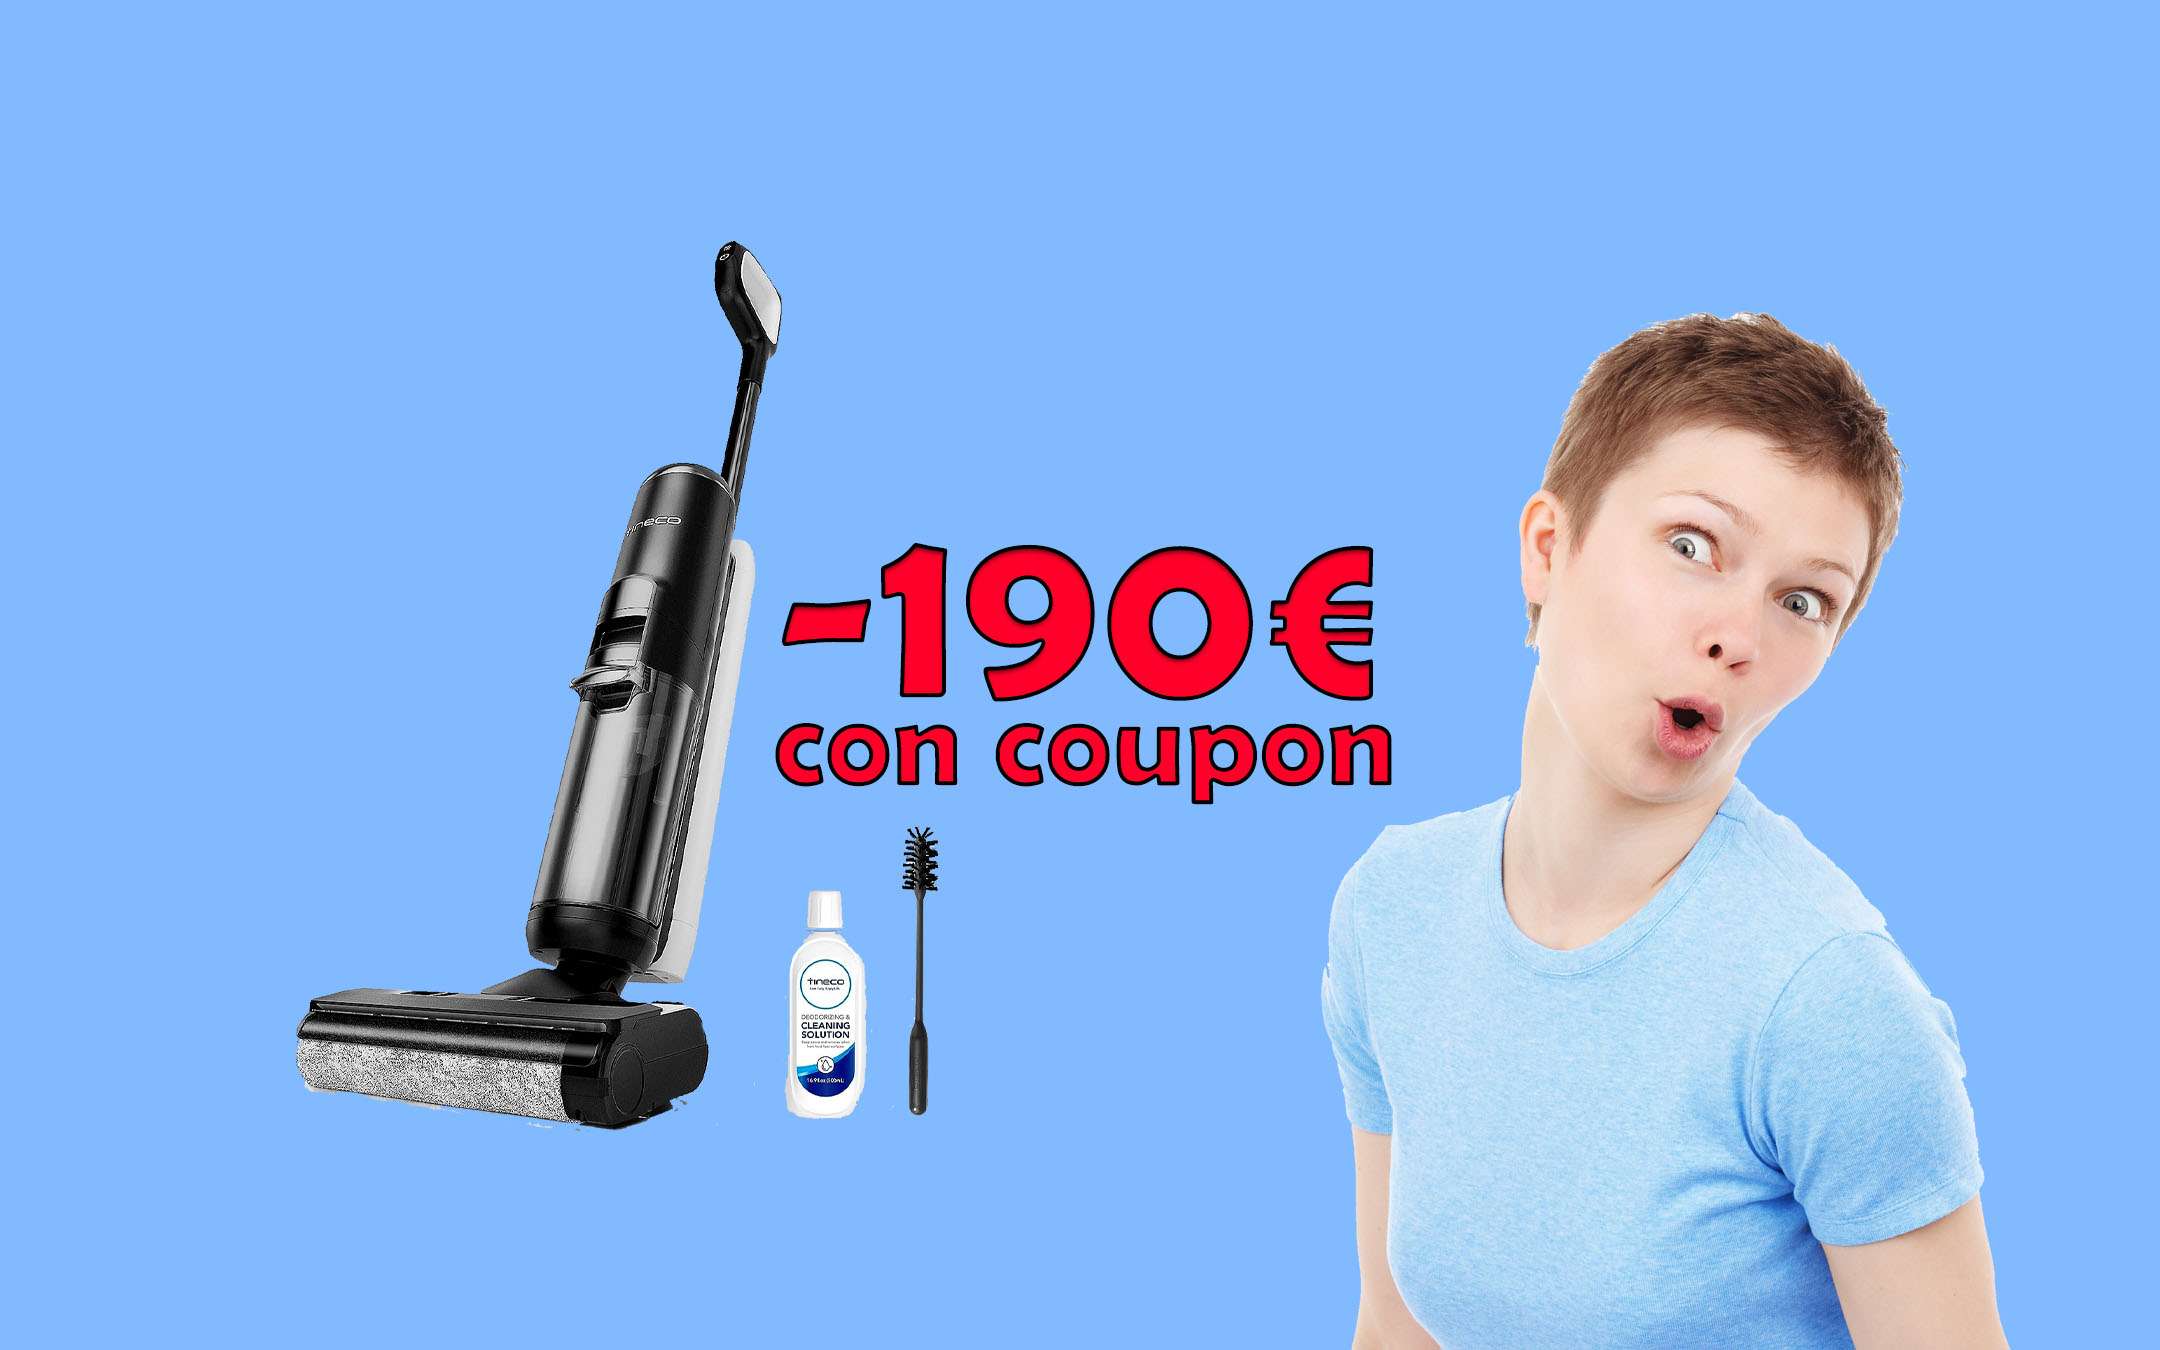 Aspirapolvere Smart senza fili lava e aspira: -190€ con coupon